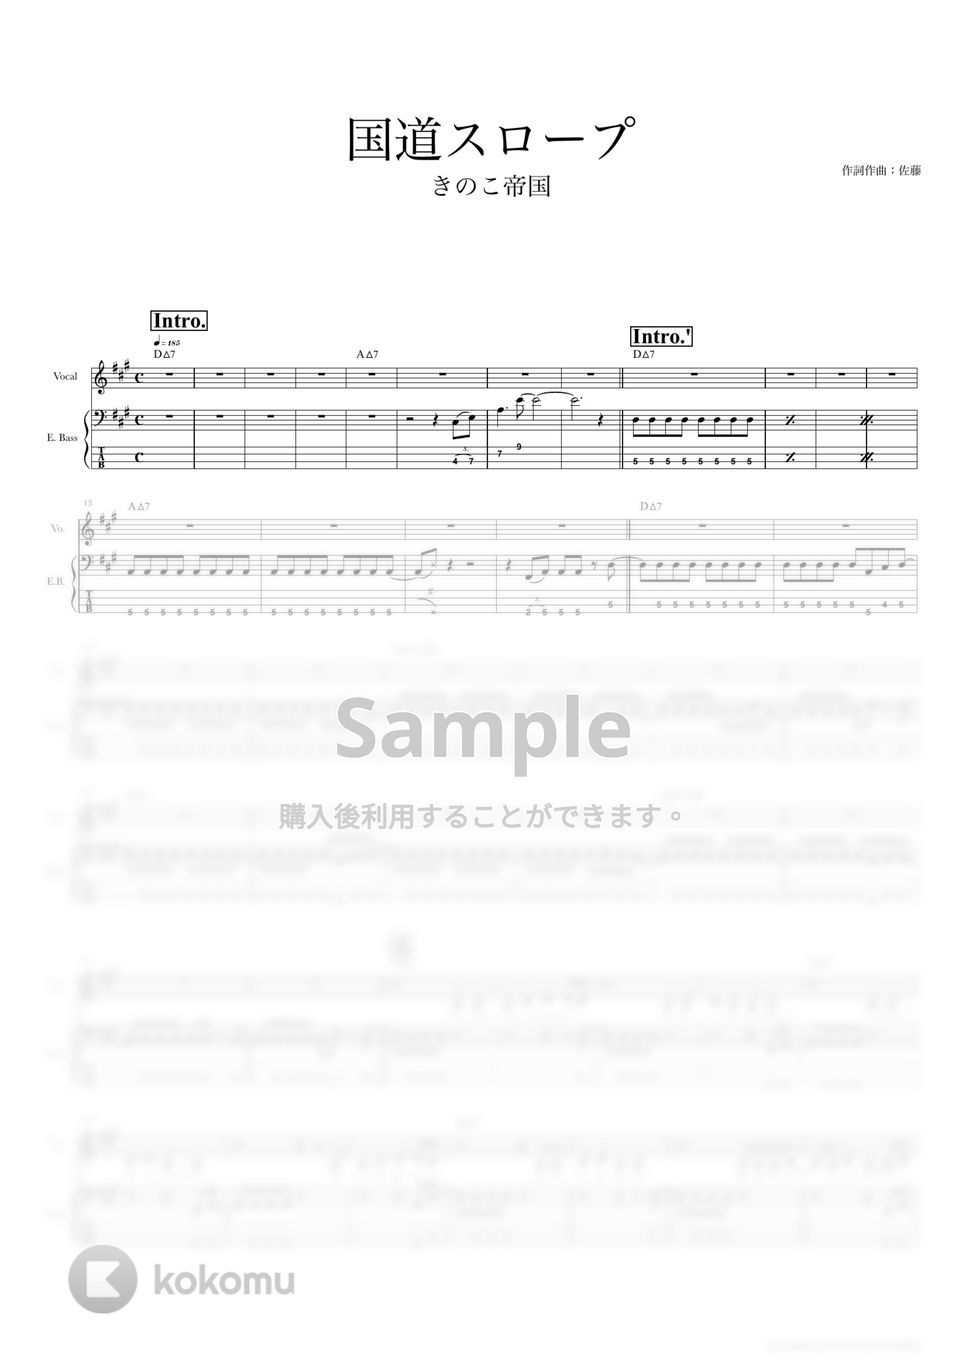 きのこ帝国 - 国道スロープ (ベーススコア・歌詞・コード付き) by TRIAD GUITAR SCHOOL